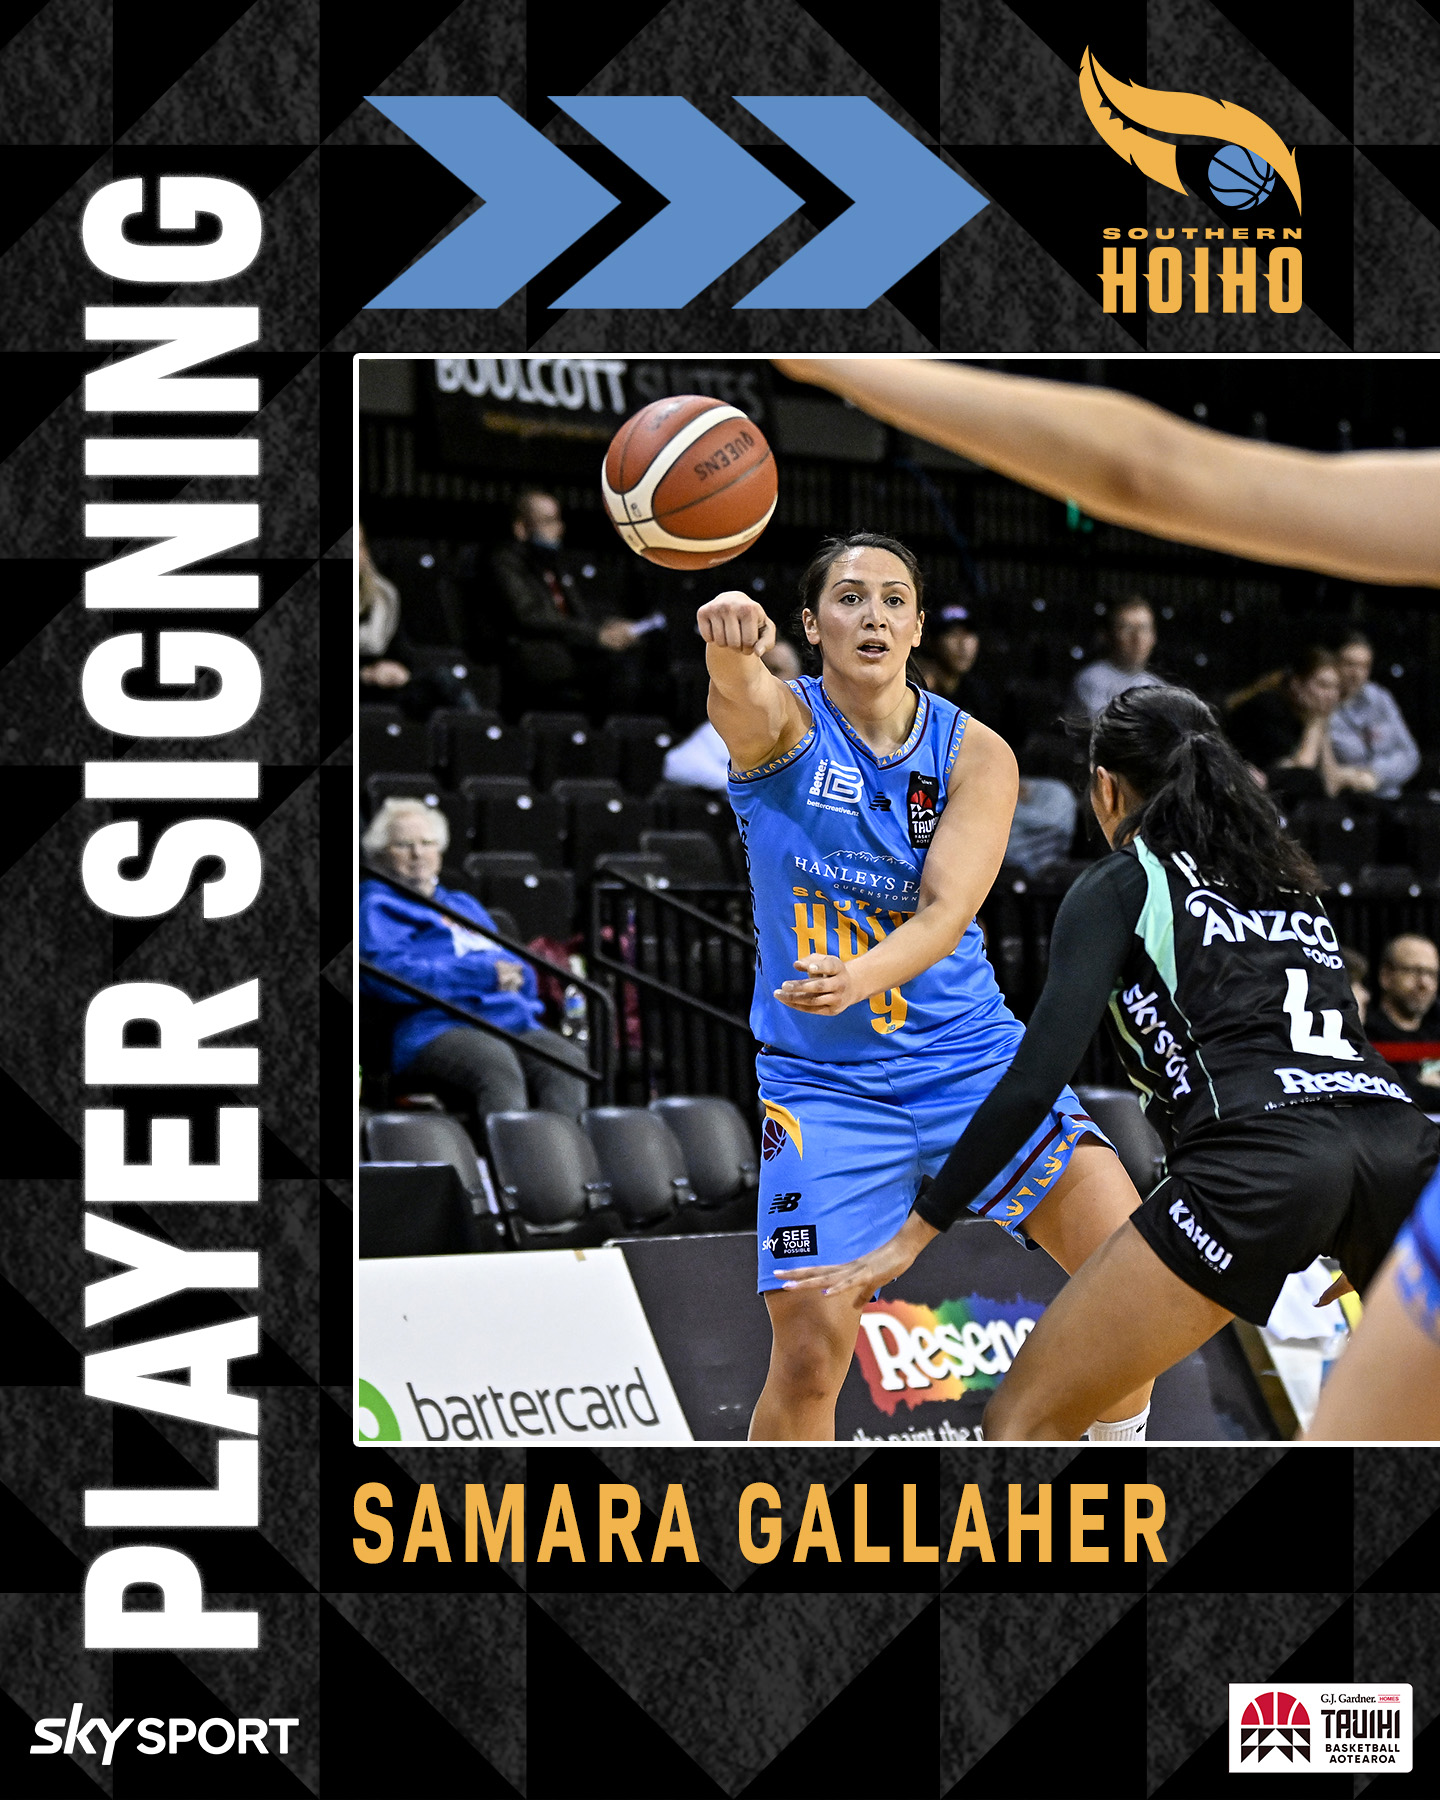 Samara Gallaher